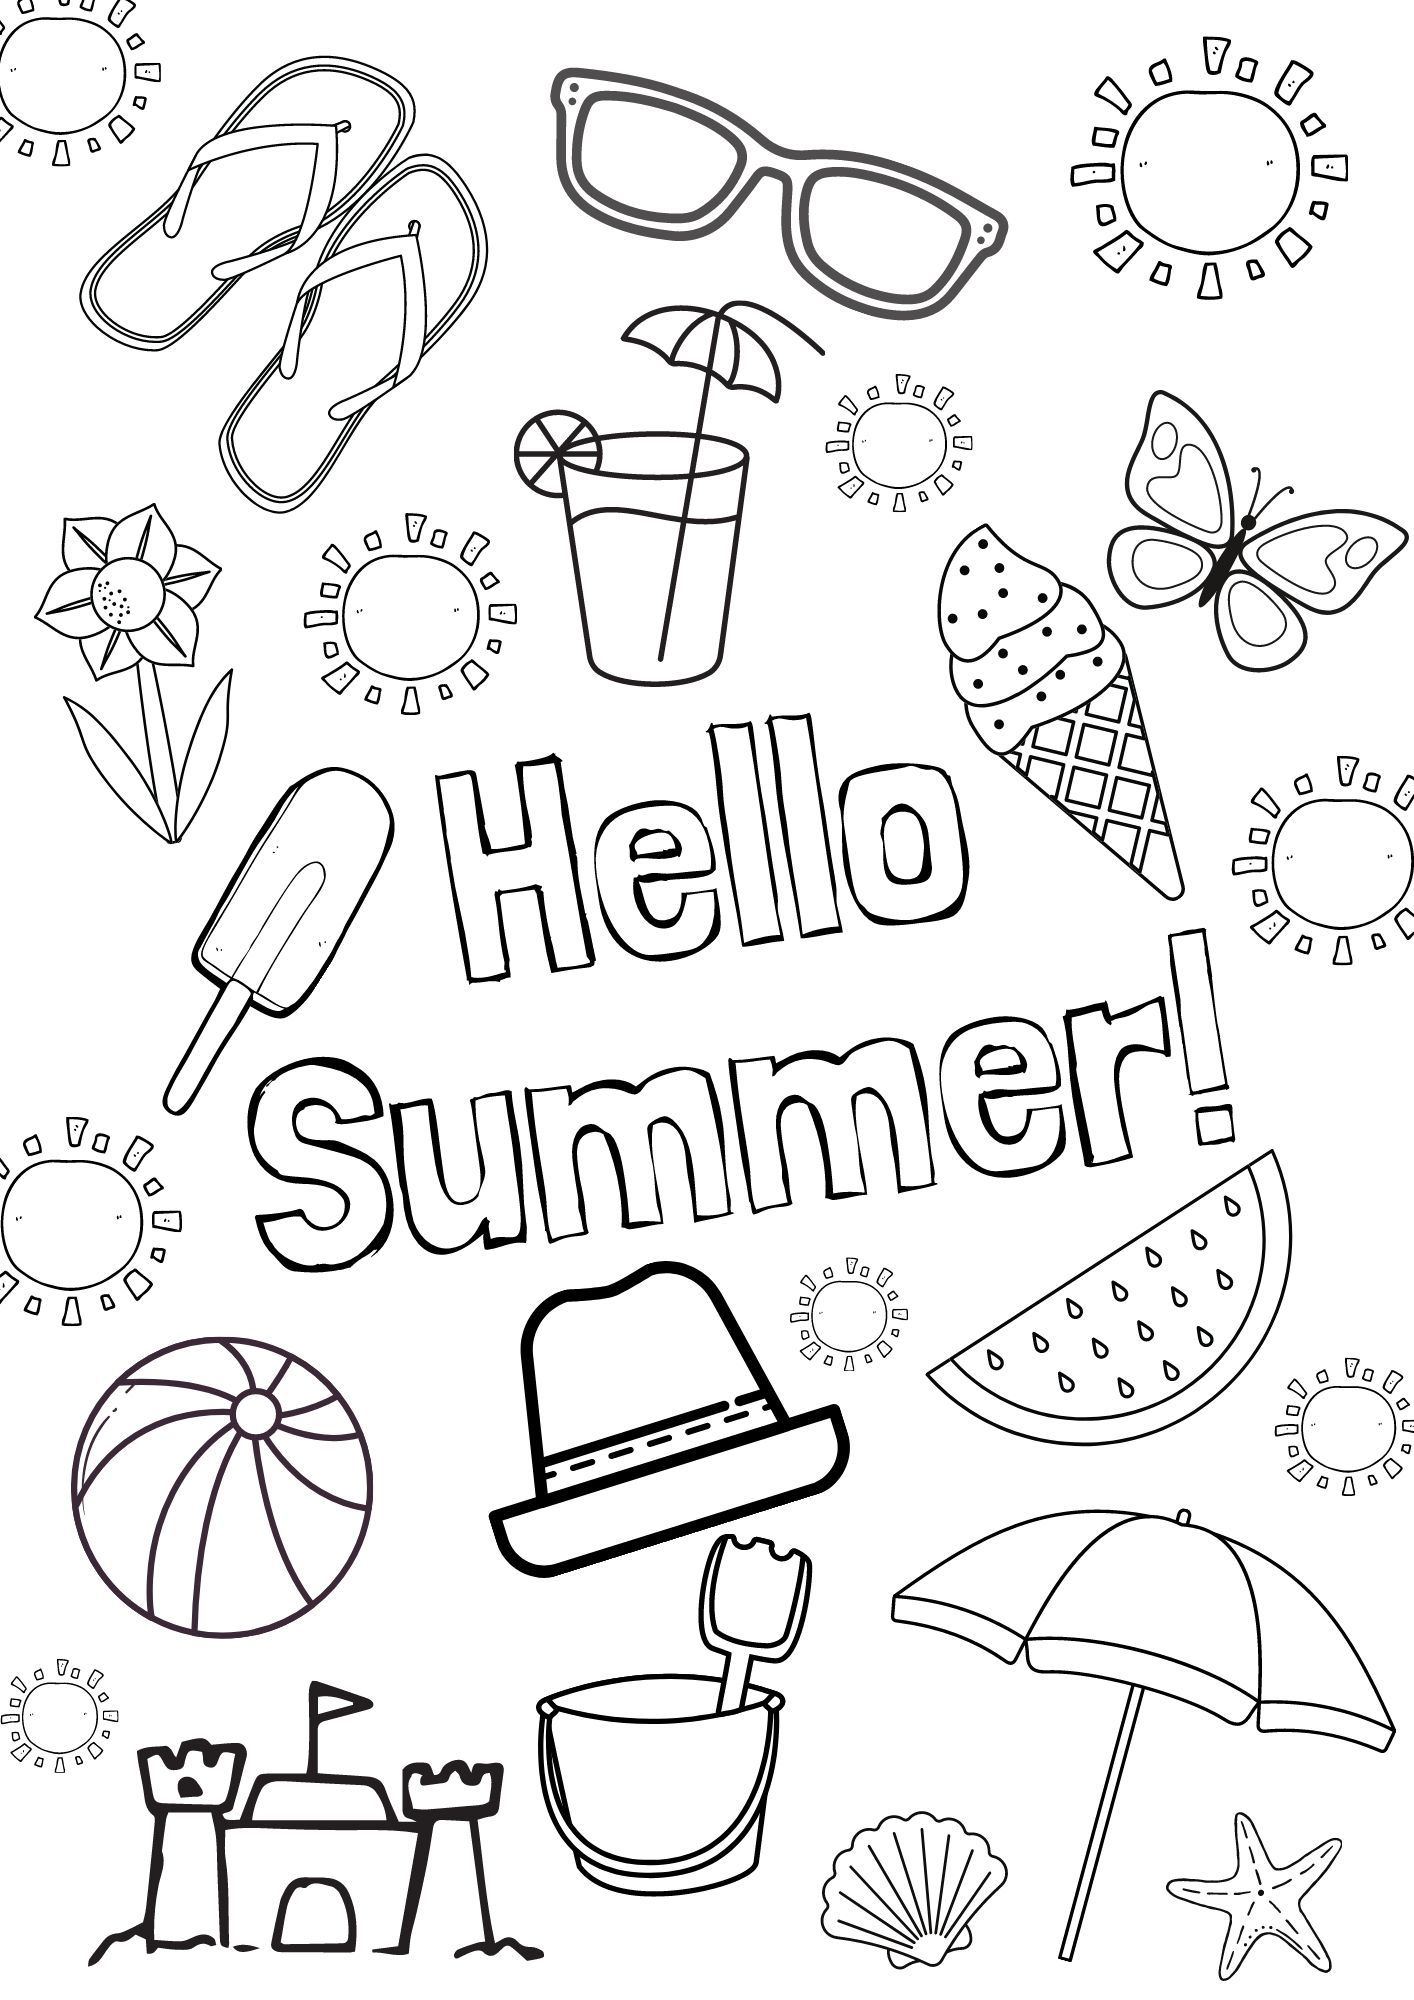 Épinglé sur Summer activities for kids